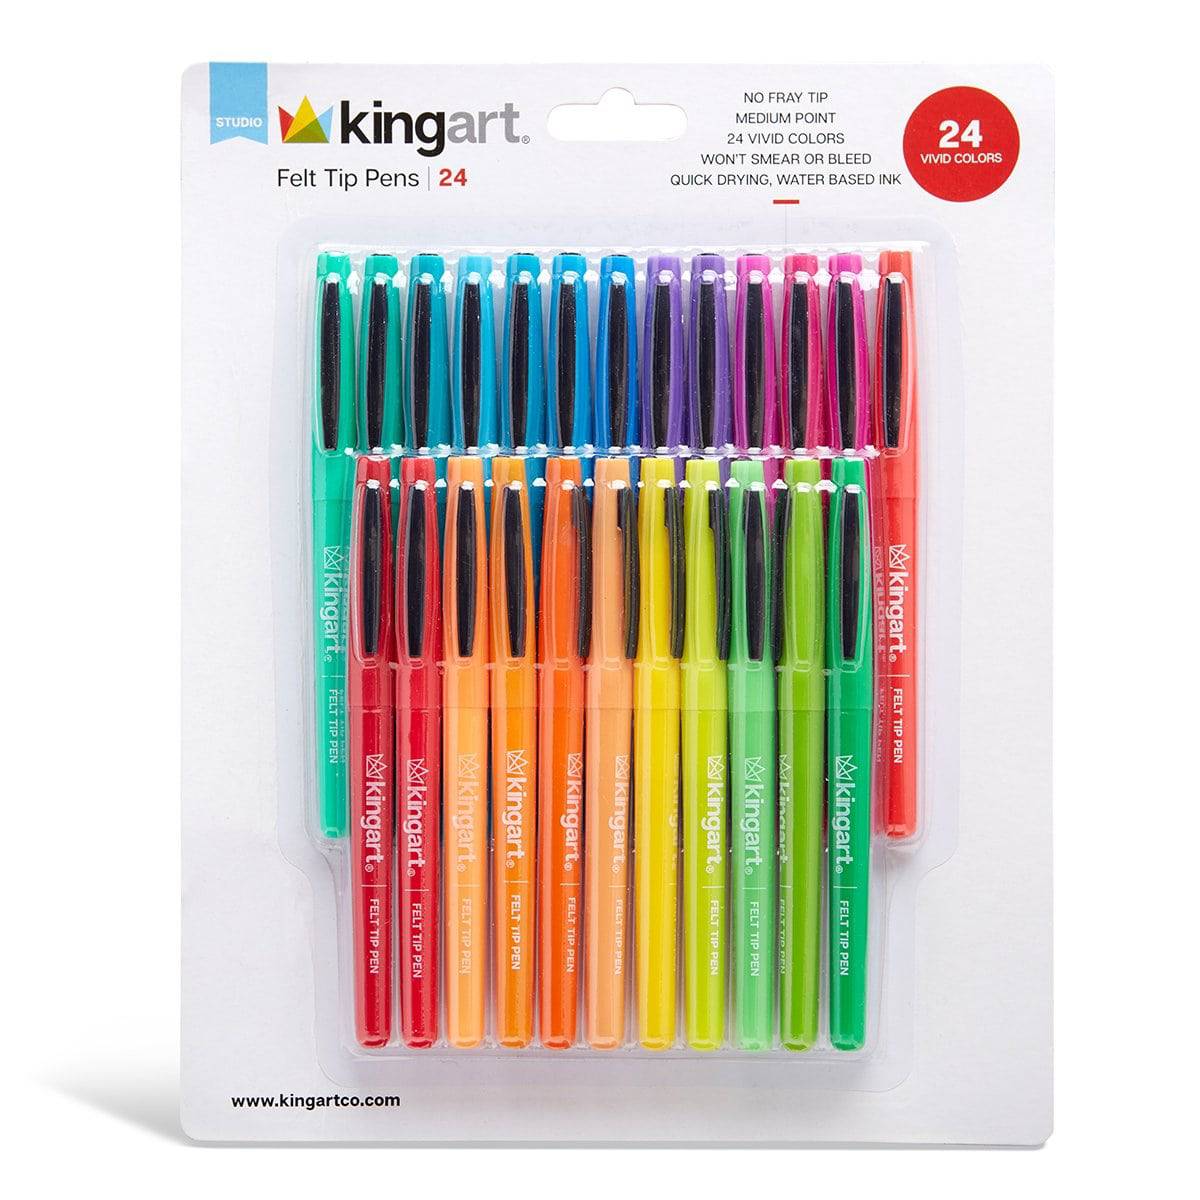 https://www.kingartco.com/cdn/shop/products/kingart-studio-kingart-studio-felt-tip-pens-medium-point-set-24-unique-bright-colors-30196973043873_1200x.jpg?v=1640288622